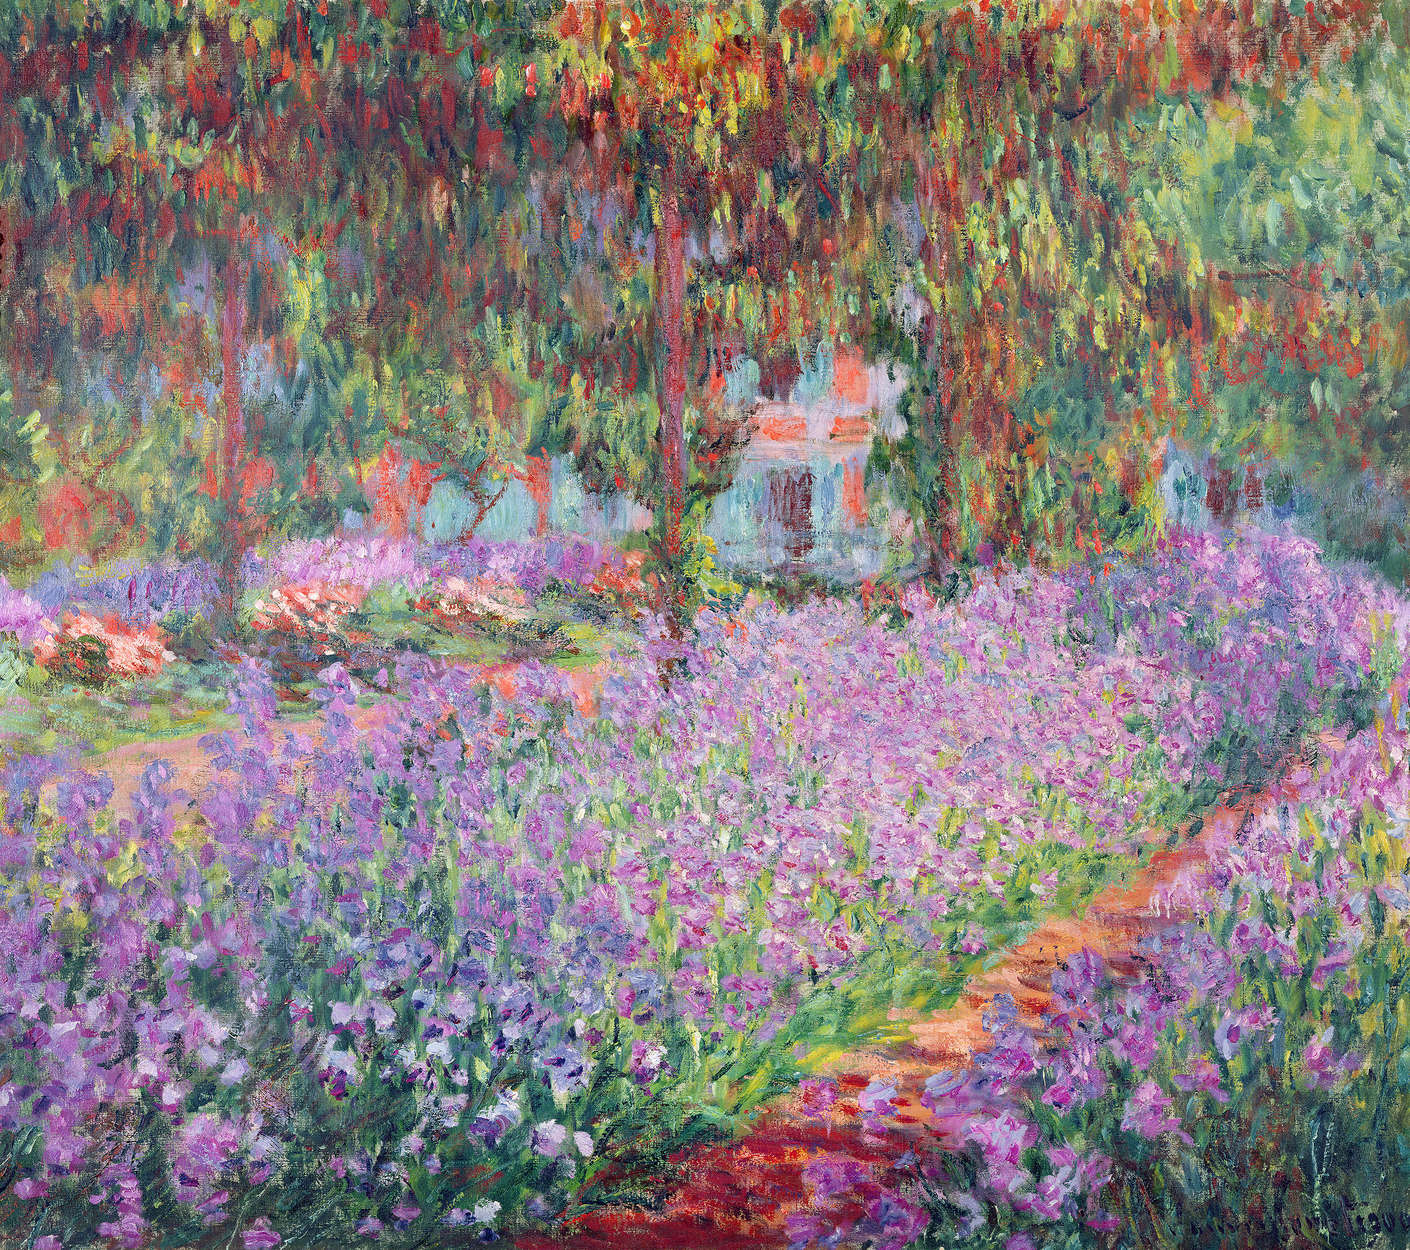             Mural "El jardín del artista en Giverny" de Claude Monet
        